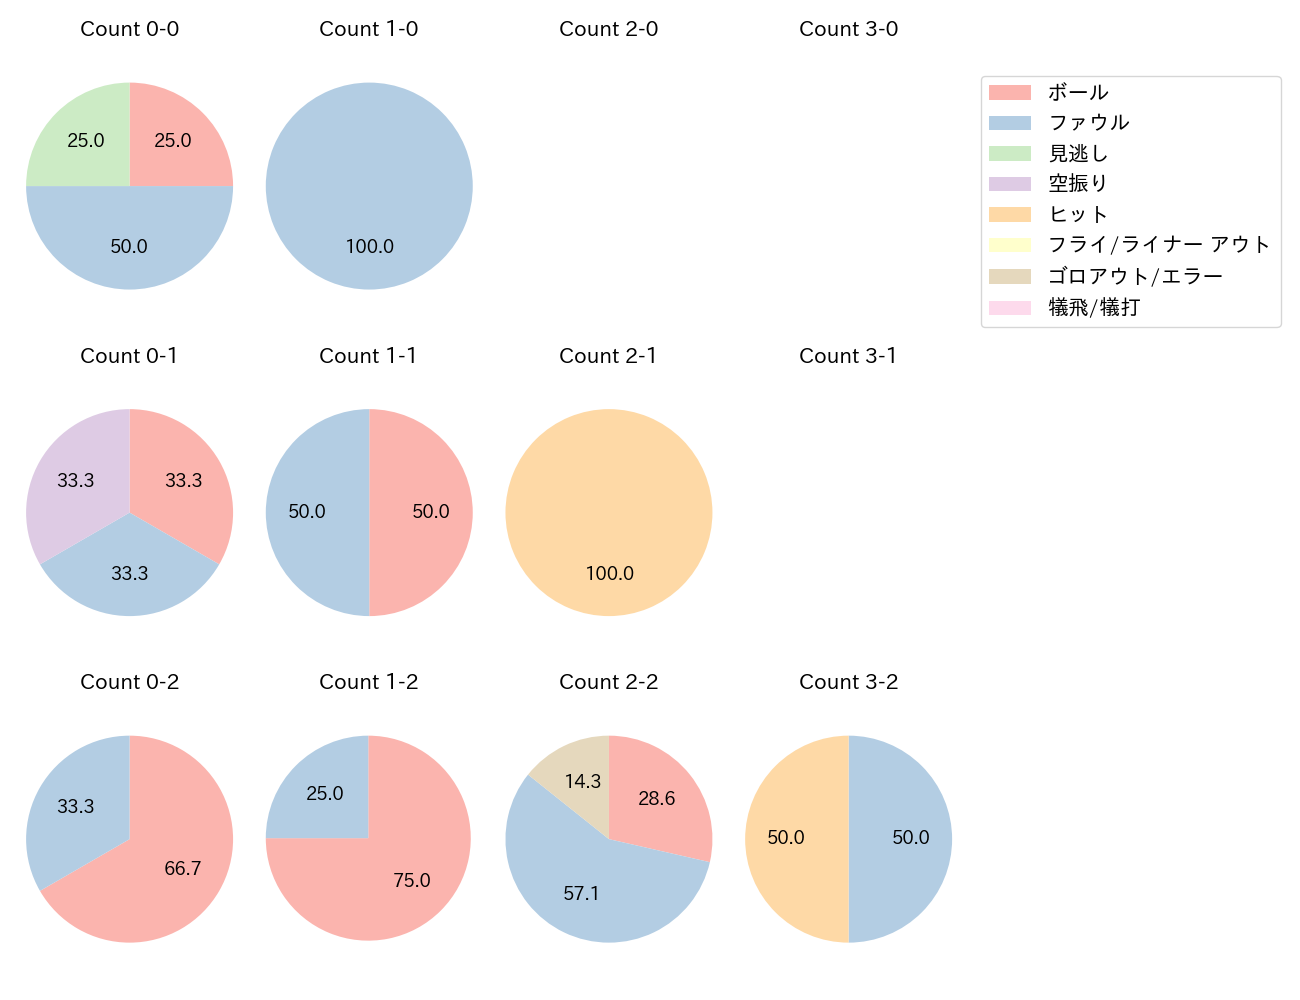 小幡 竜平の球数分布(2023年3月)